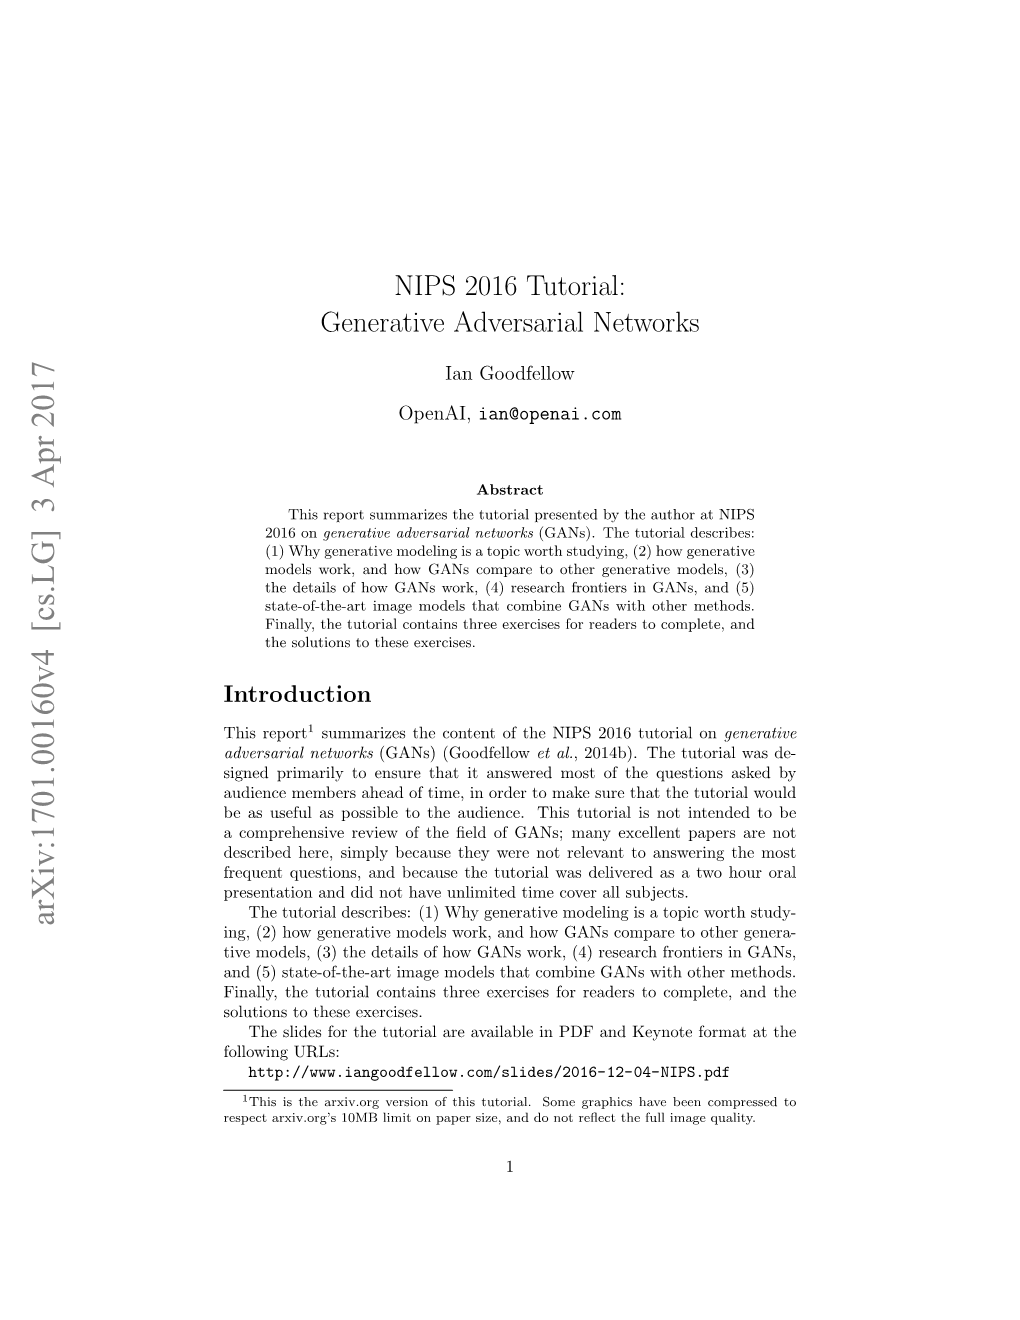 NIPS 2016 Tutorial: Generative Adversarial Networks